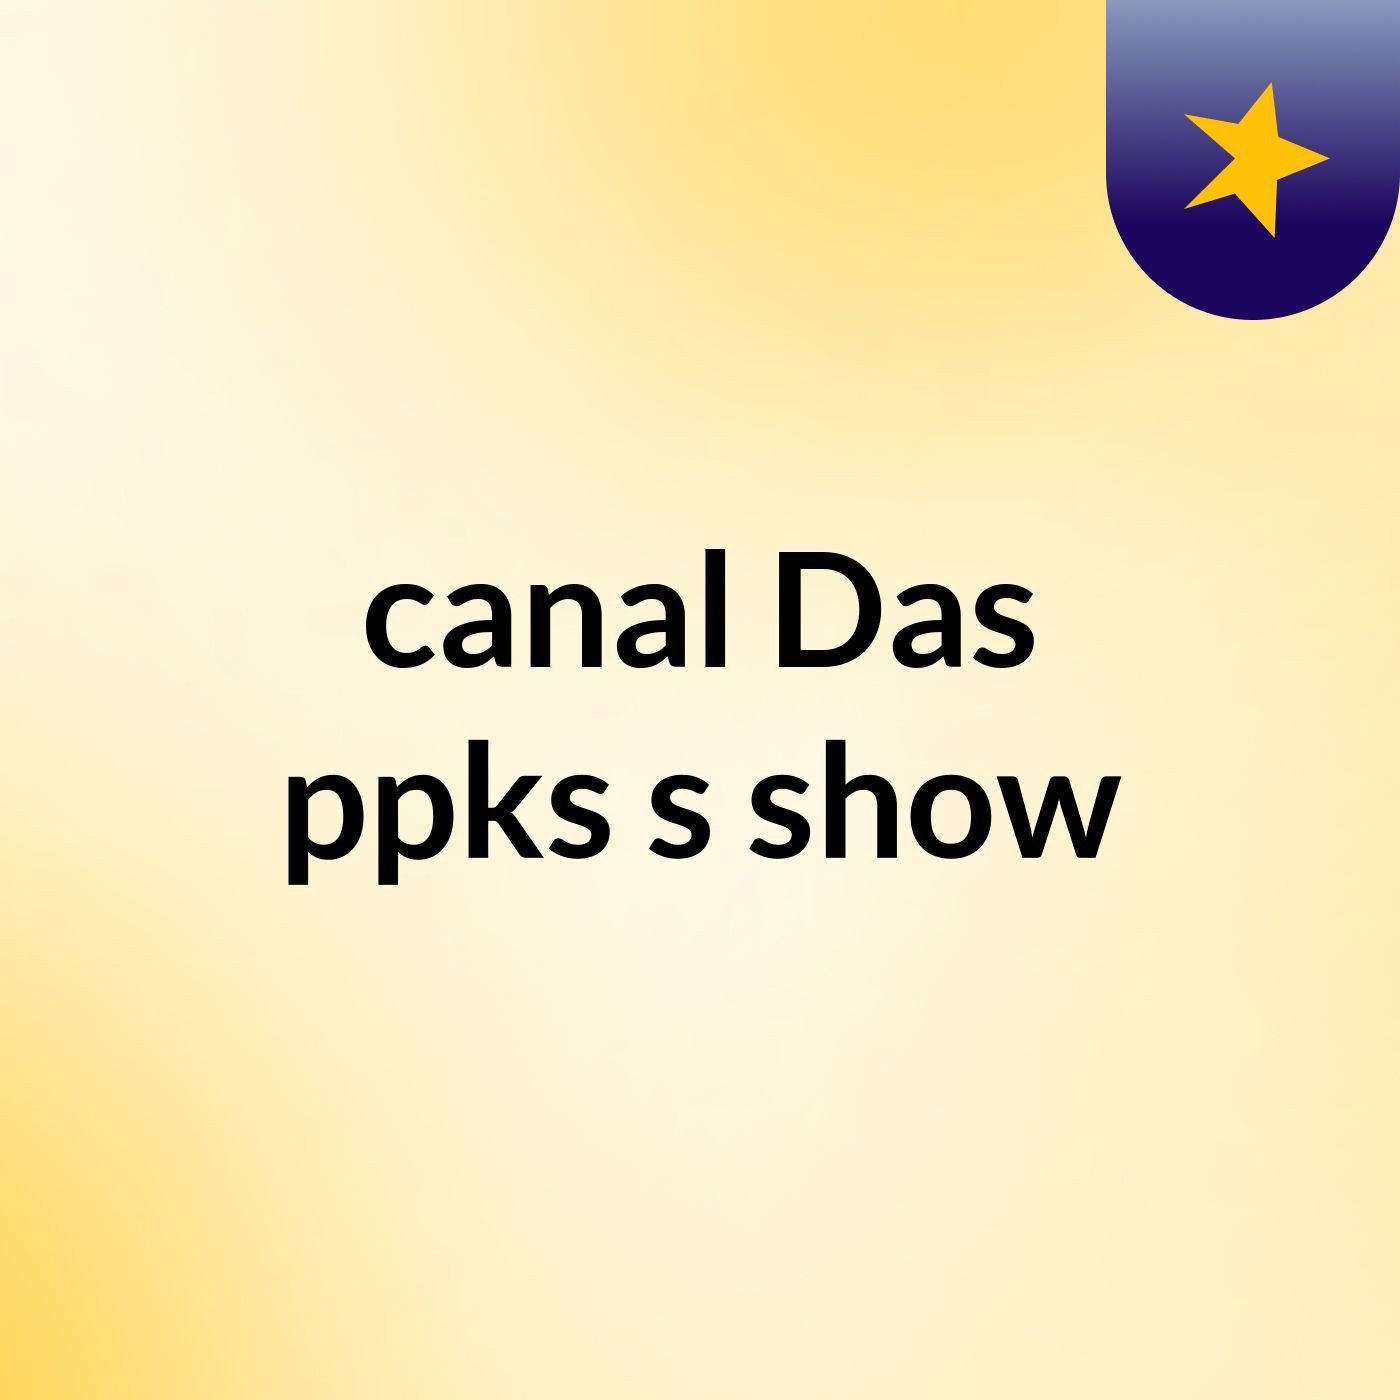 canal Das ppks's show